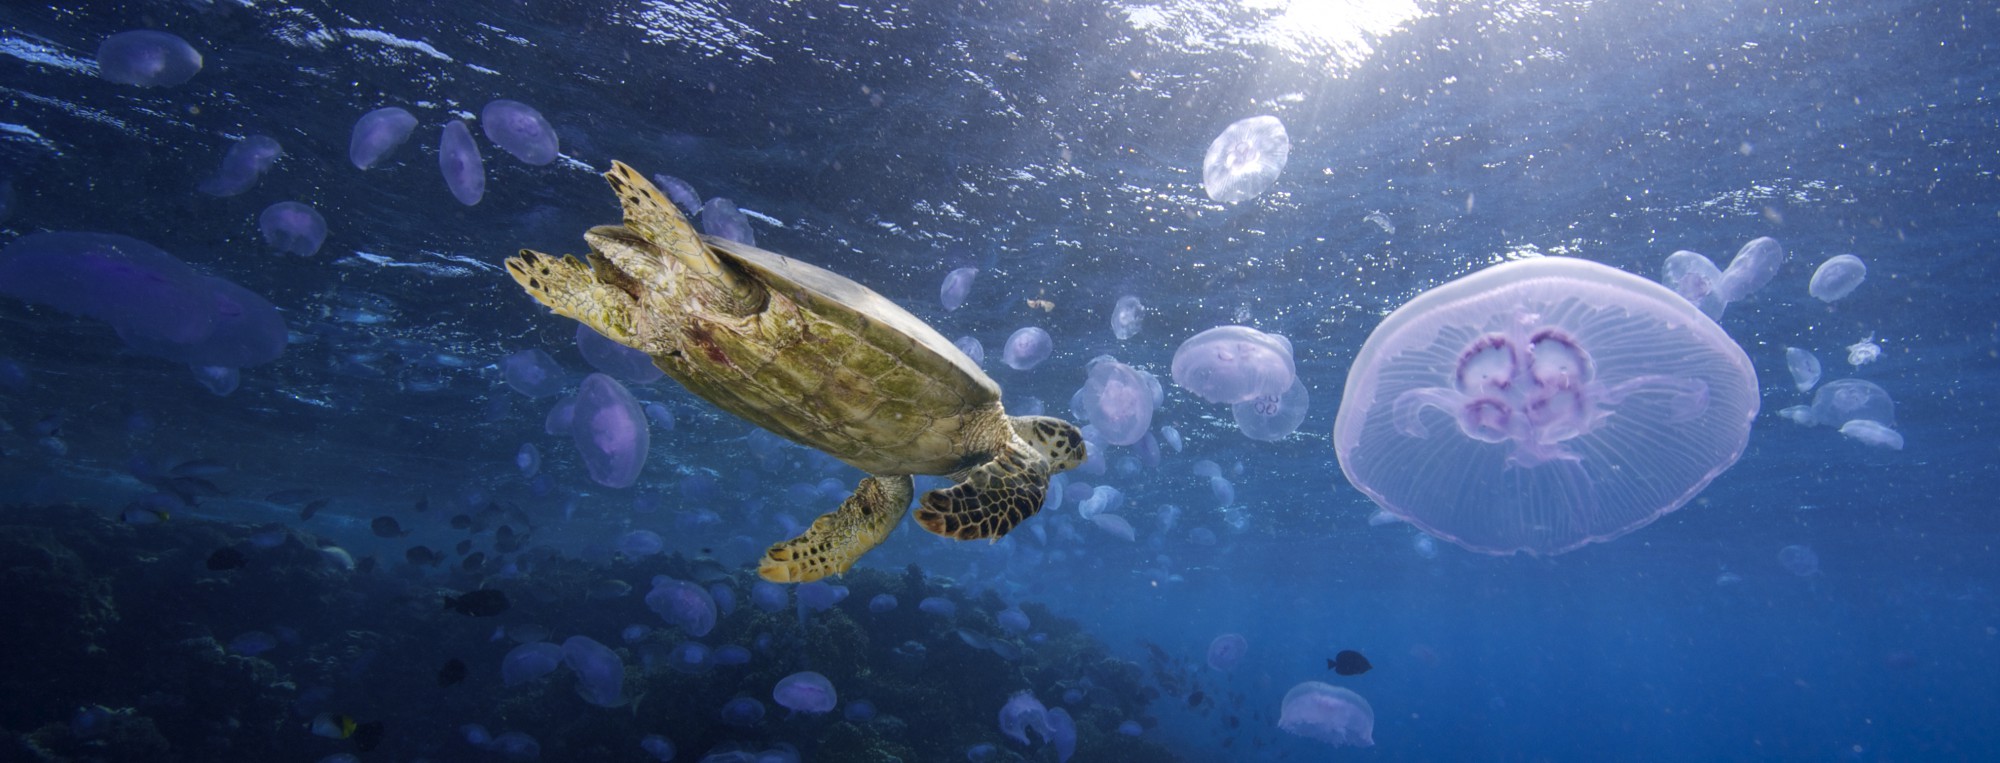 Sea Turtle, Red Sea - Egypt